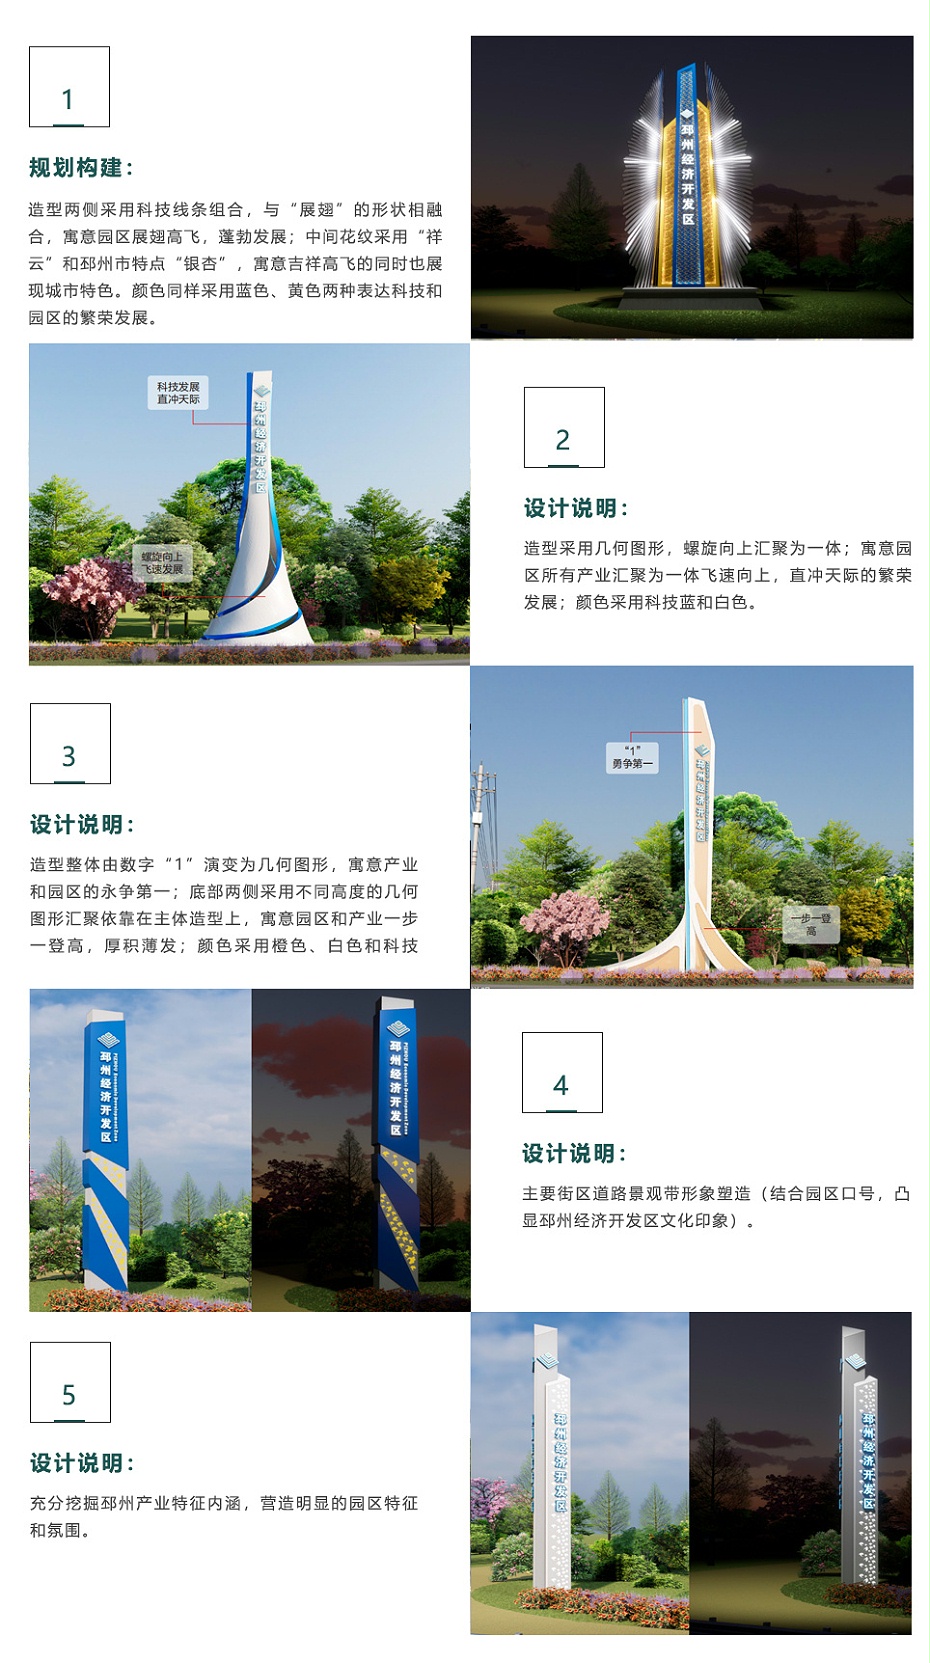 邳州经济开发区形象提升规划标识设计